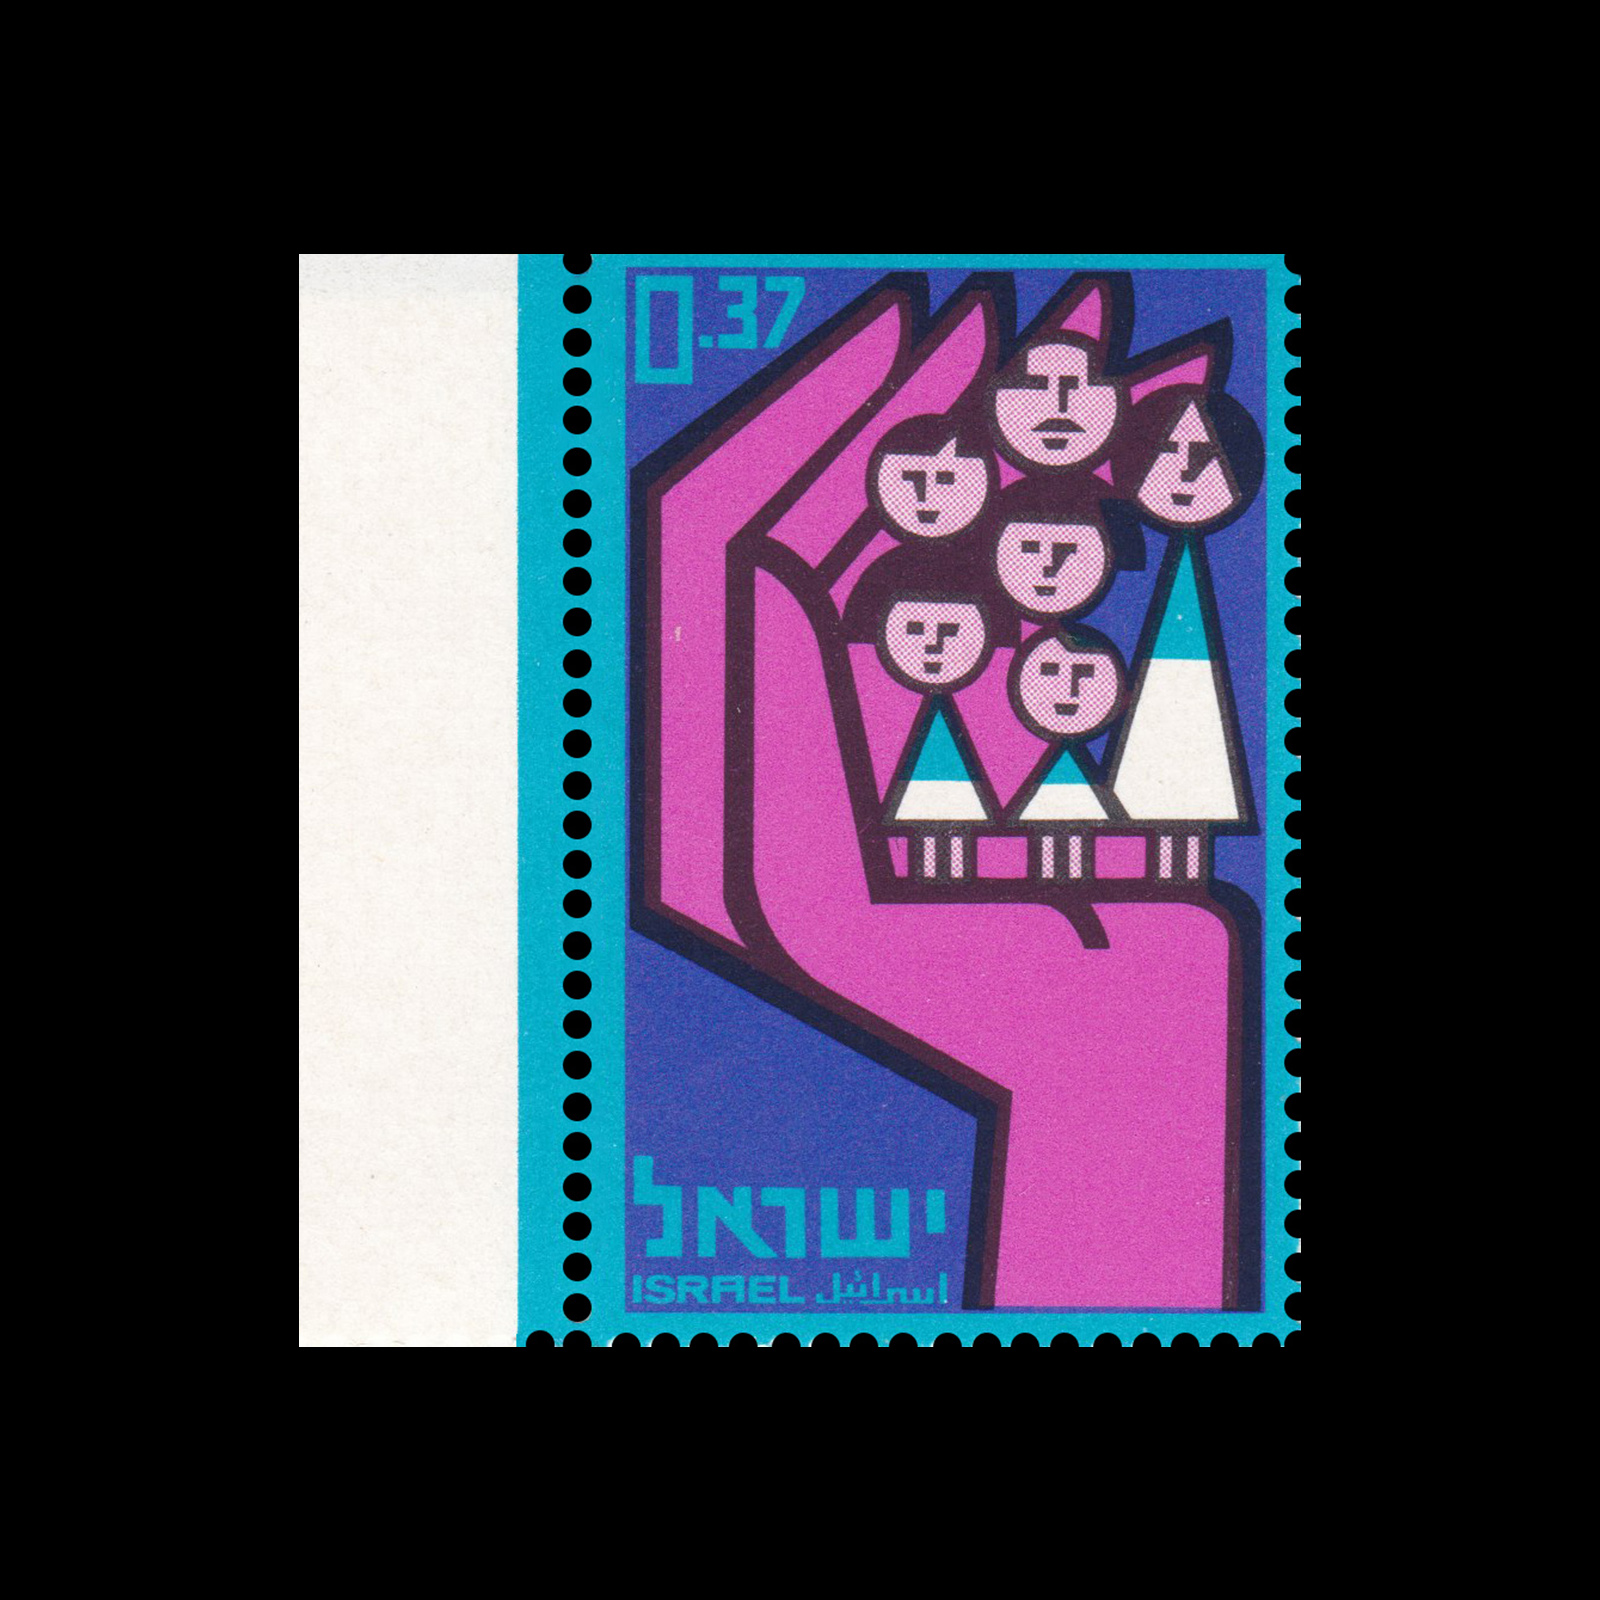 National Insurance Scheme, Israel Stamps, 1964. Designed by Eliezer Weishoff.